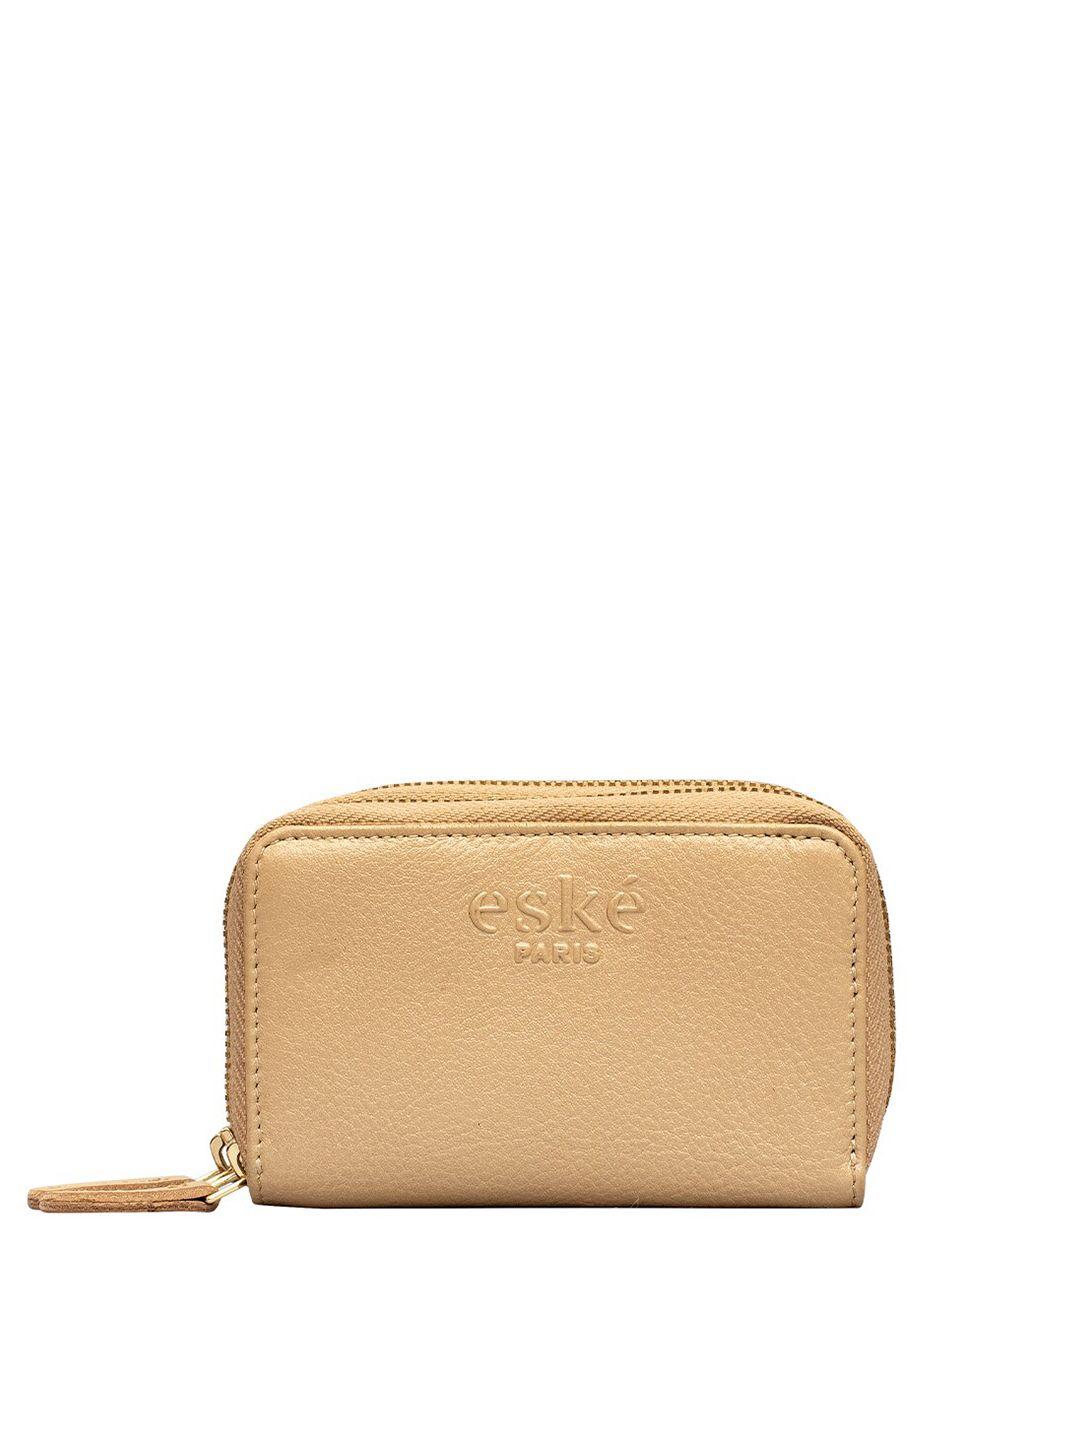 eske women leather zip around wallet